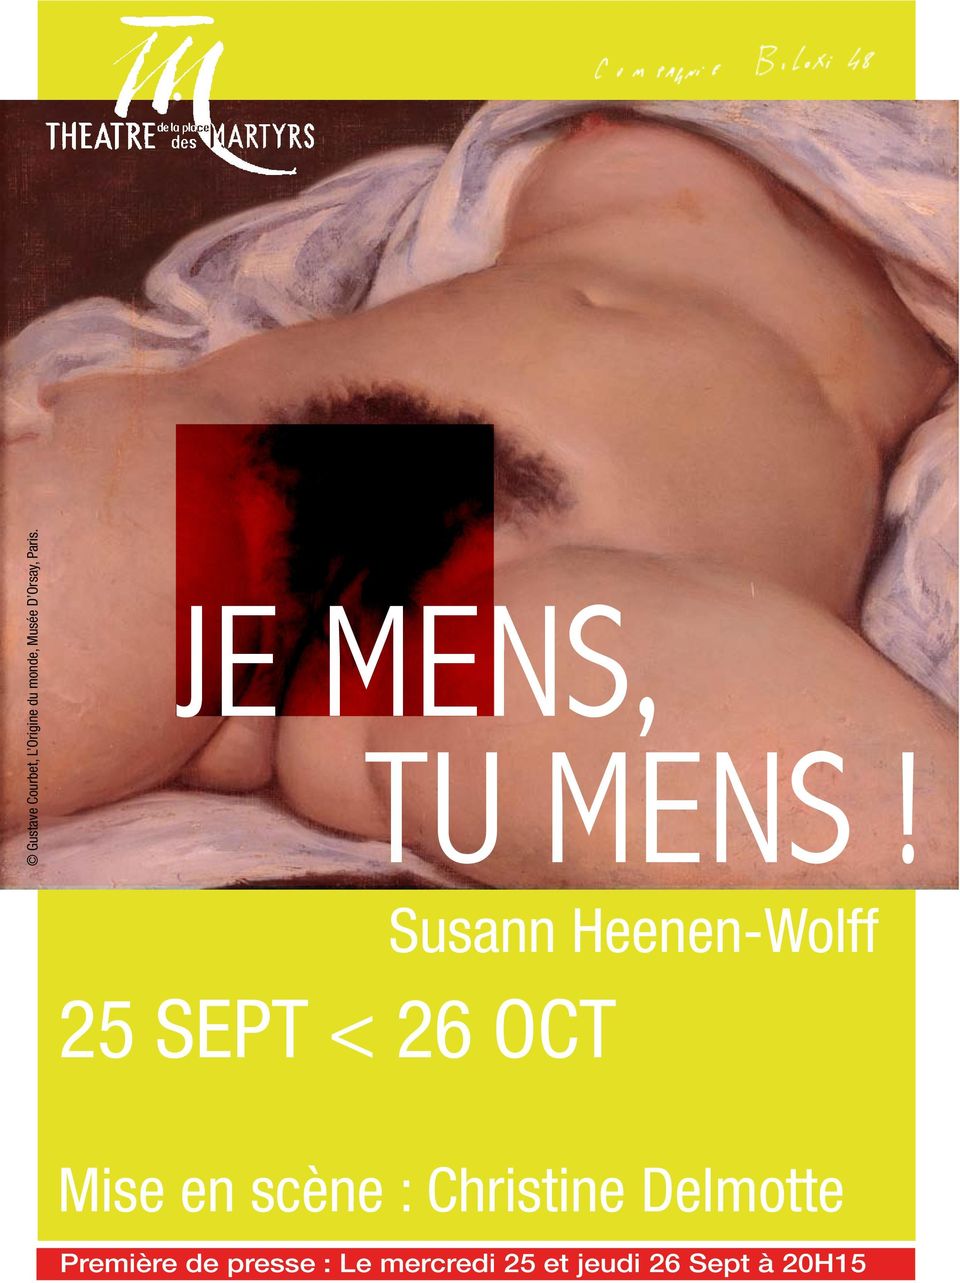 25 SEPT < 26 OCT Susann Heenen-Wolff Mise en scène :